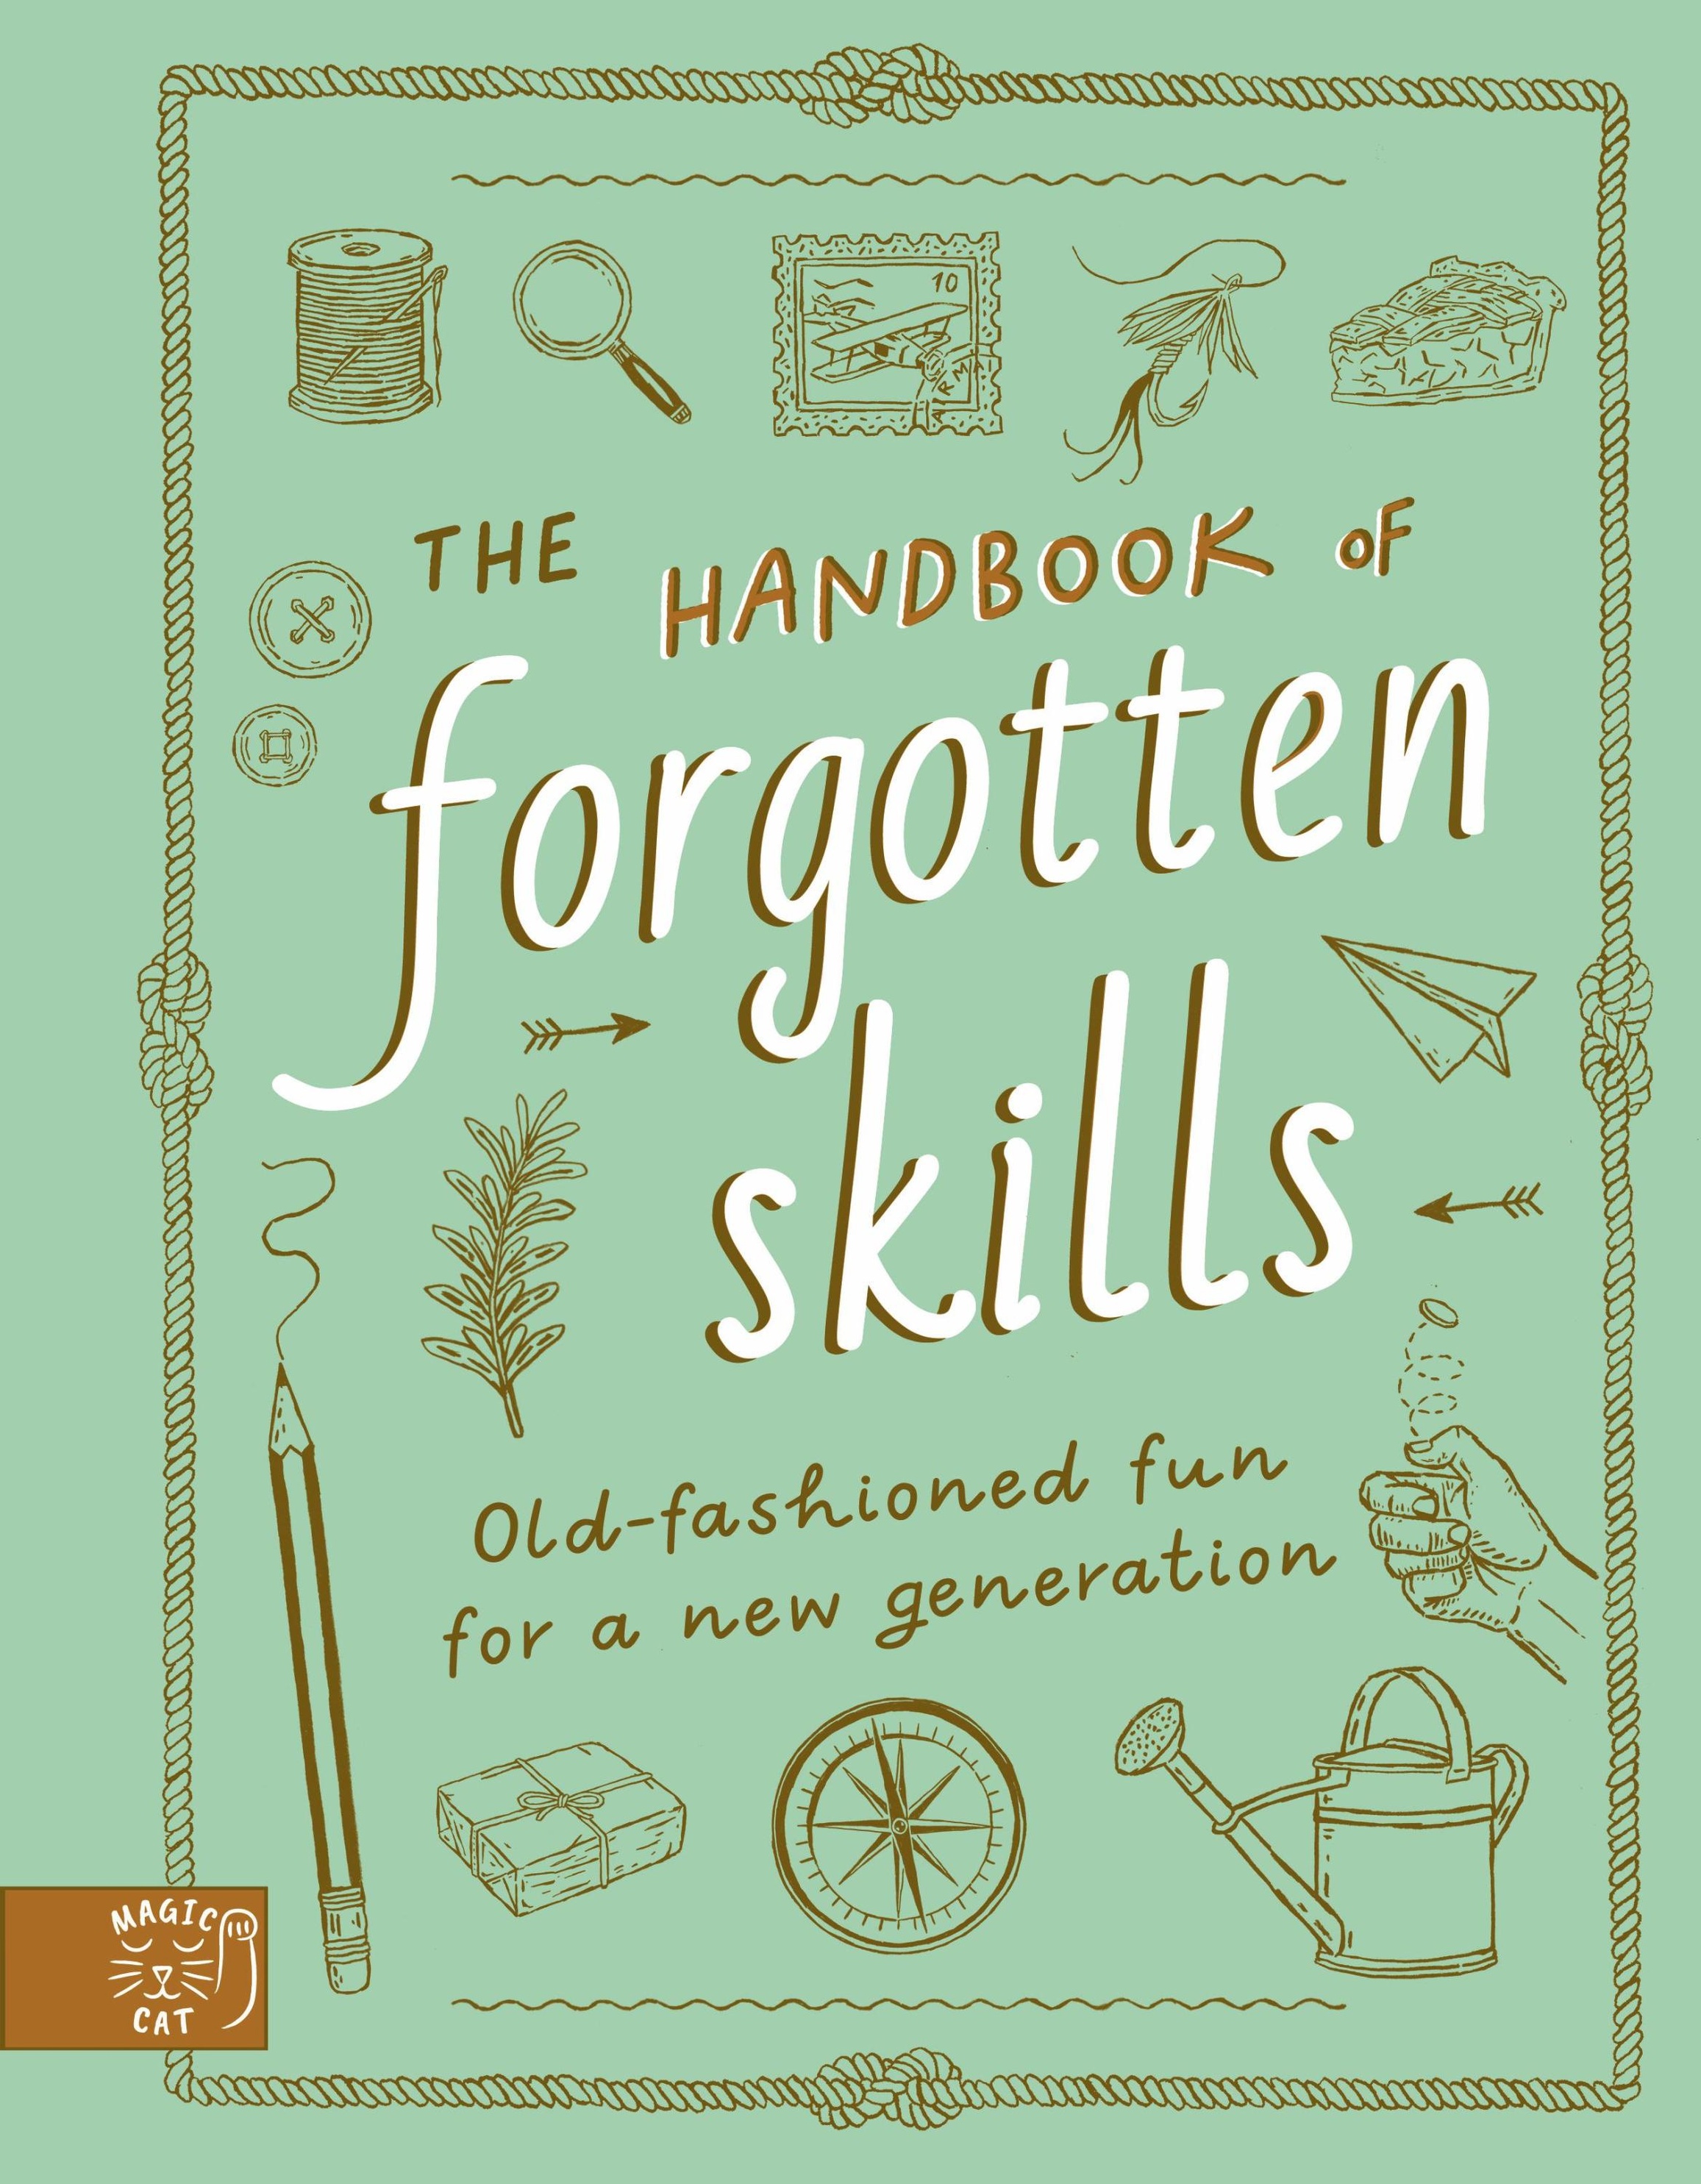 https://i.weltbild.de/p/the-handbook-of-forgotten-skills-341910572.jpg?v=1&wp=_max